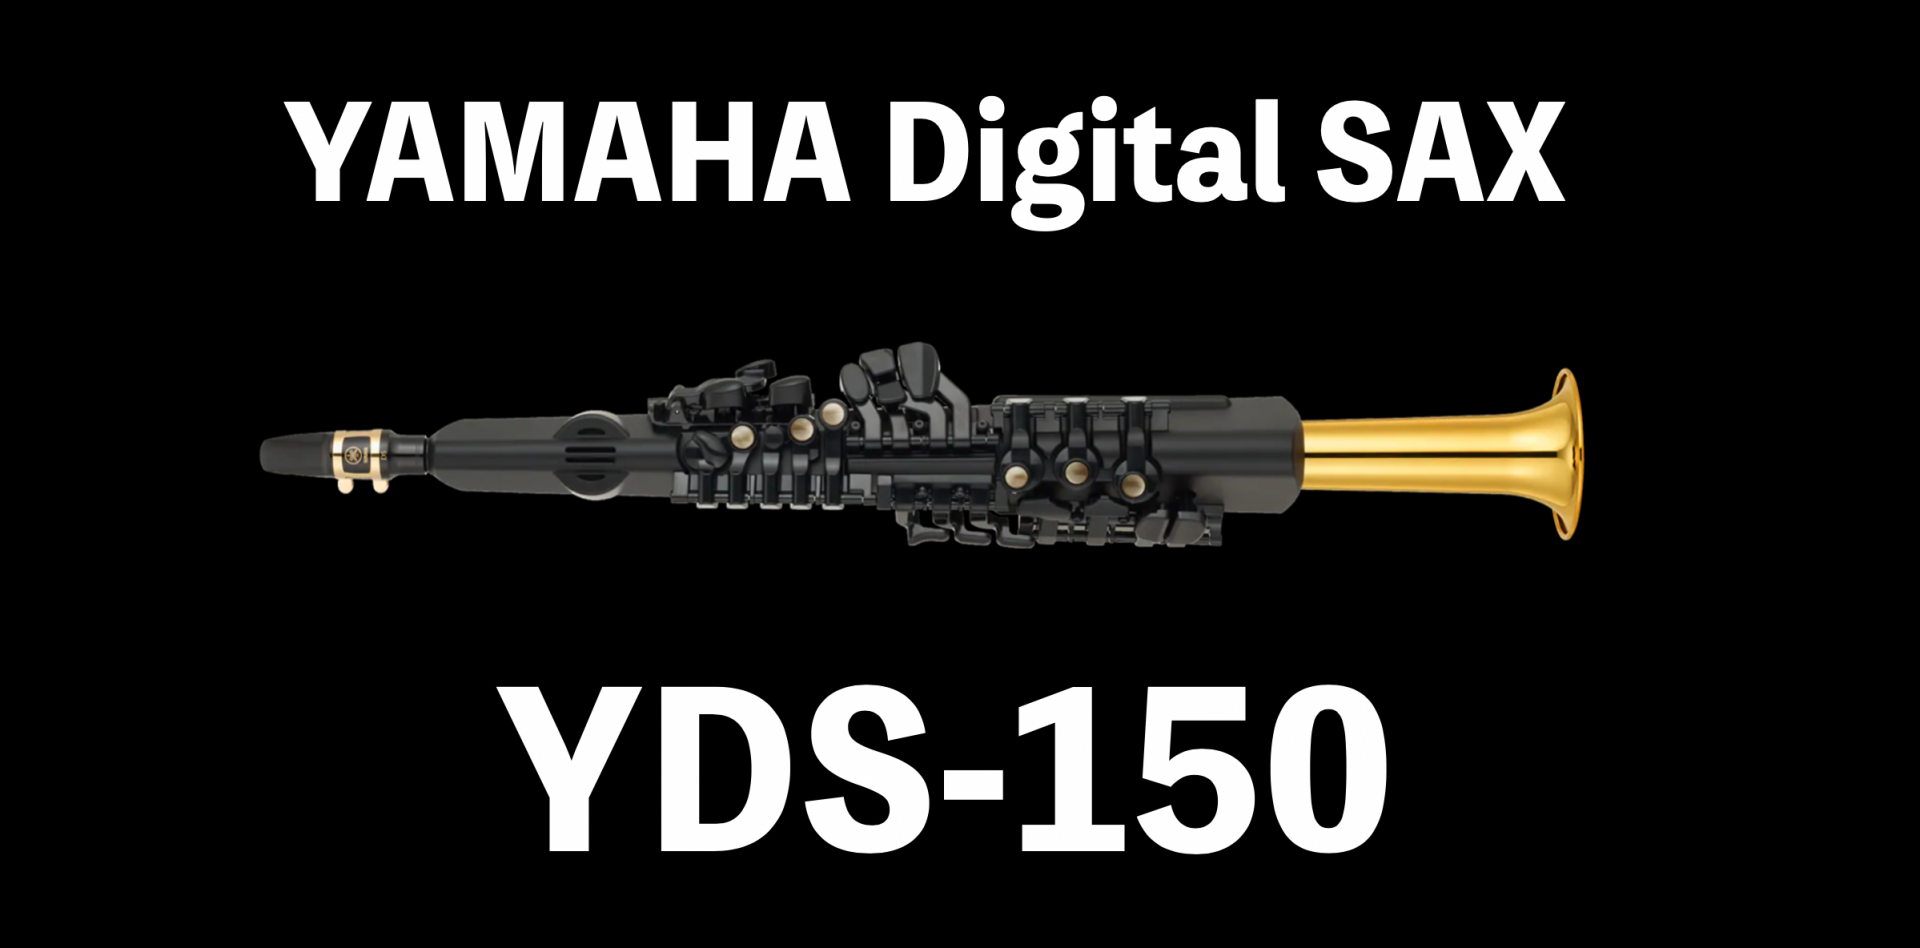 *ついに発売決定！YAMAHAのデジタルサックスTDS-150！！ “YDS-150 デジタルサックス”と銘打たれ、現在のAKAIのウィンドシンセEWIシリーズやRolandのエアロフォン（AE）シリーズと近いカテゴリーとなる本商品。ユーザーたちは歓喜に沸いています！！ YDS=Yamaha Dig […]